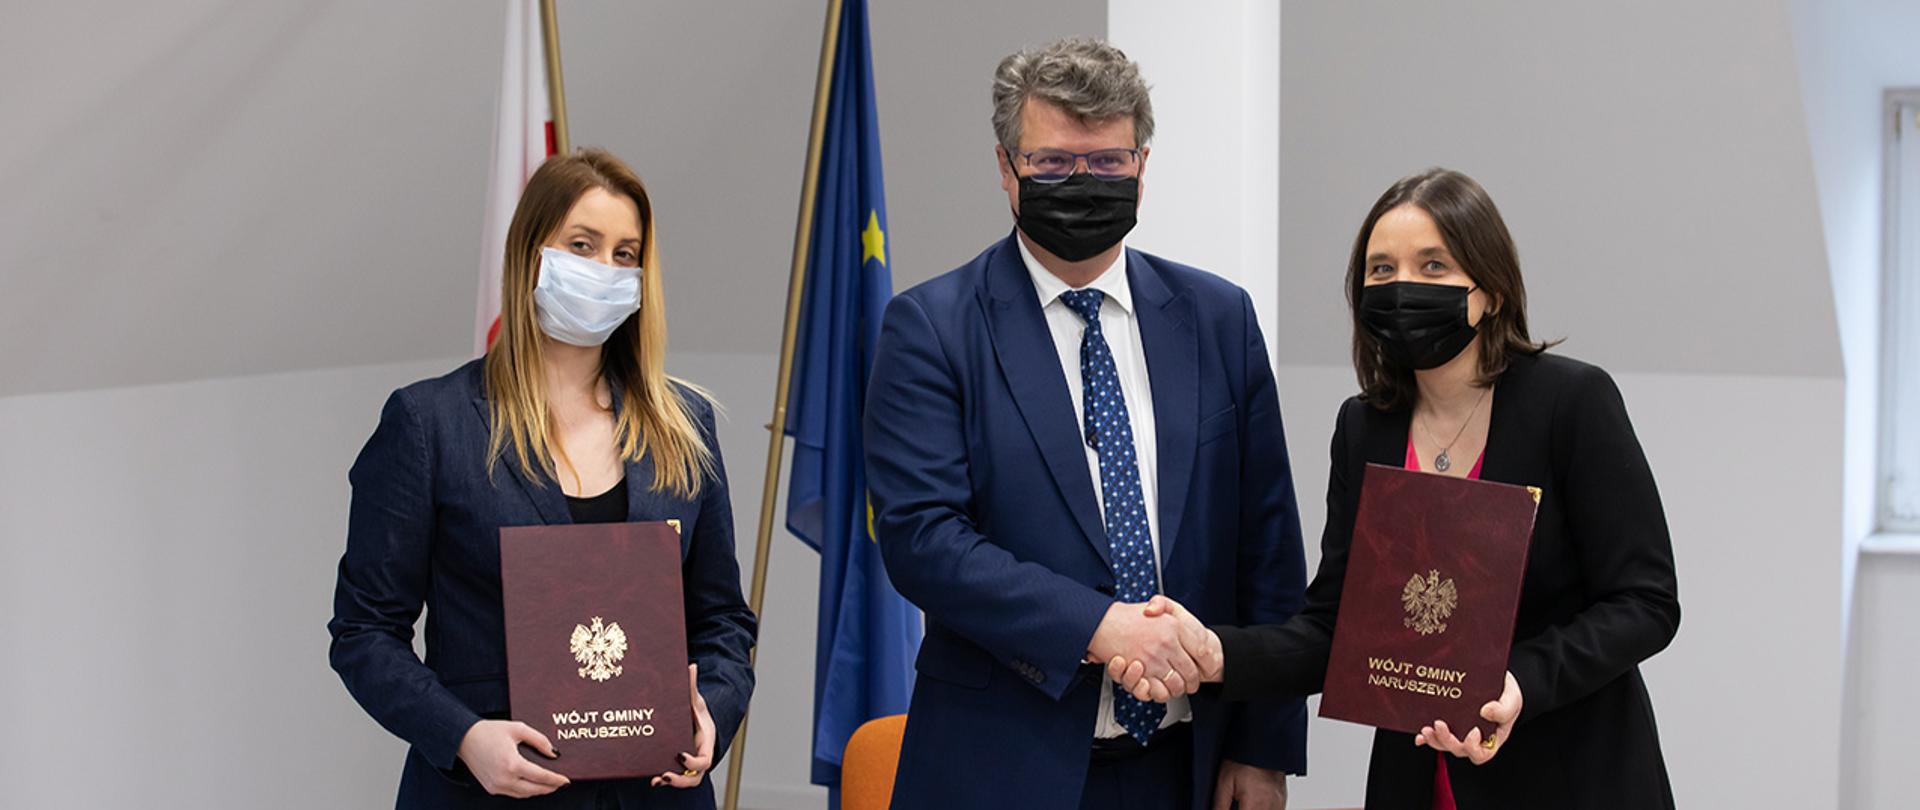 Na zdjęciu widać wiceministra Macieja Wąsika pozującego do zdjęcia z przedstawicielami stron podpisujących umowę.